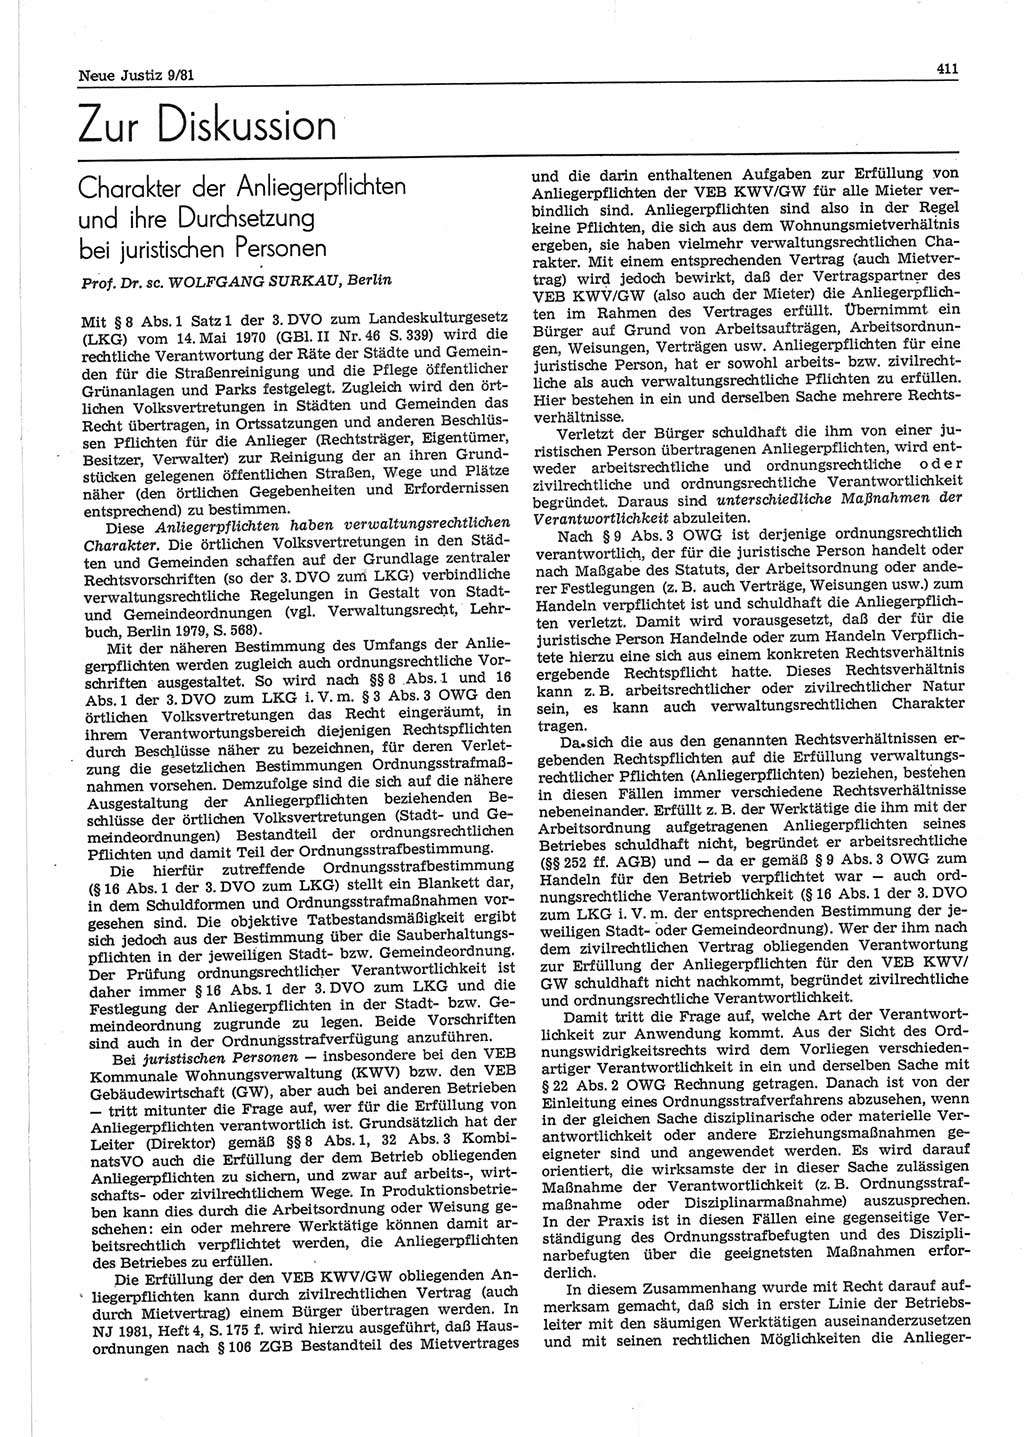 Neue Justiz (NJ), Zeitschrift für sozialistisches Recht und Gesetzlichkeit [Deutsche Demokratische Republik (DDR)], 35. Jahrgang 1981, Seite 411 (NJ DDR 1981, S. 411)